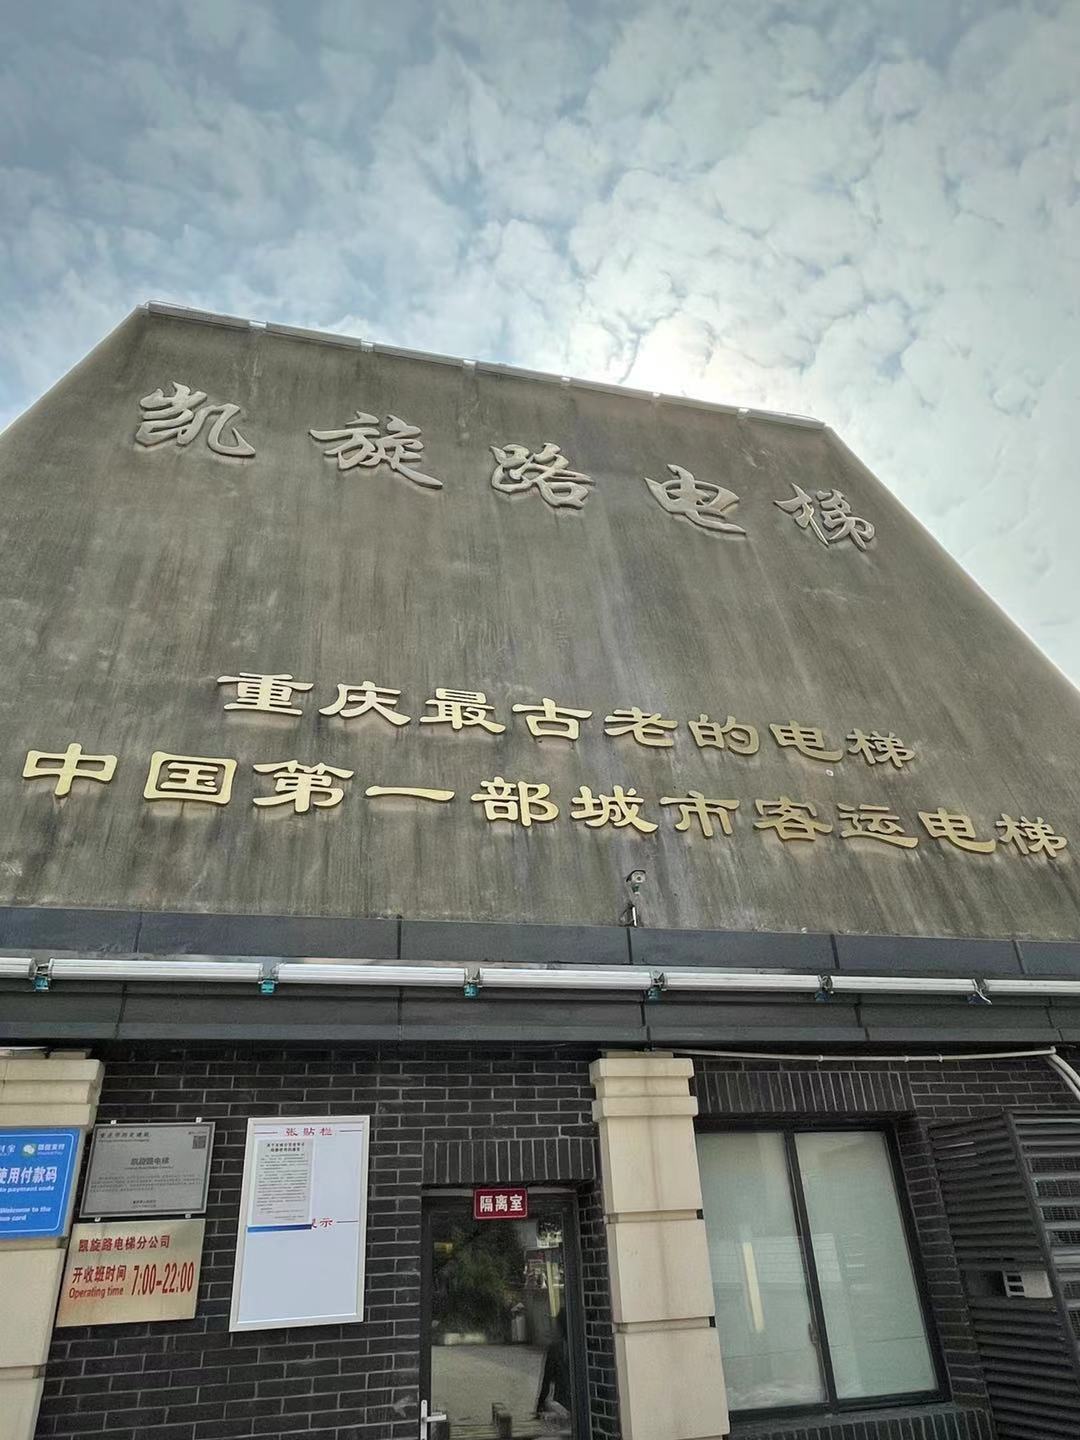 旅游攻略重庆凯旋路电梯是非常值得一去的景点周边景点有国民政府军事